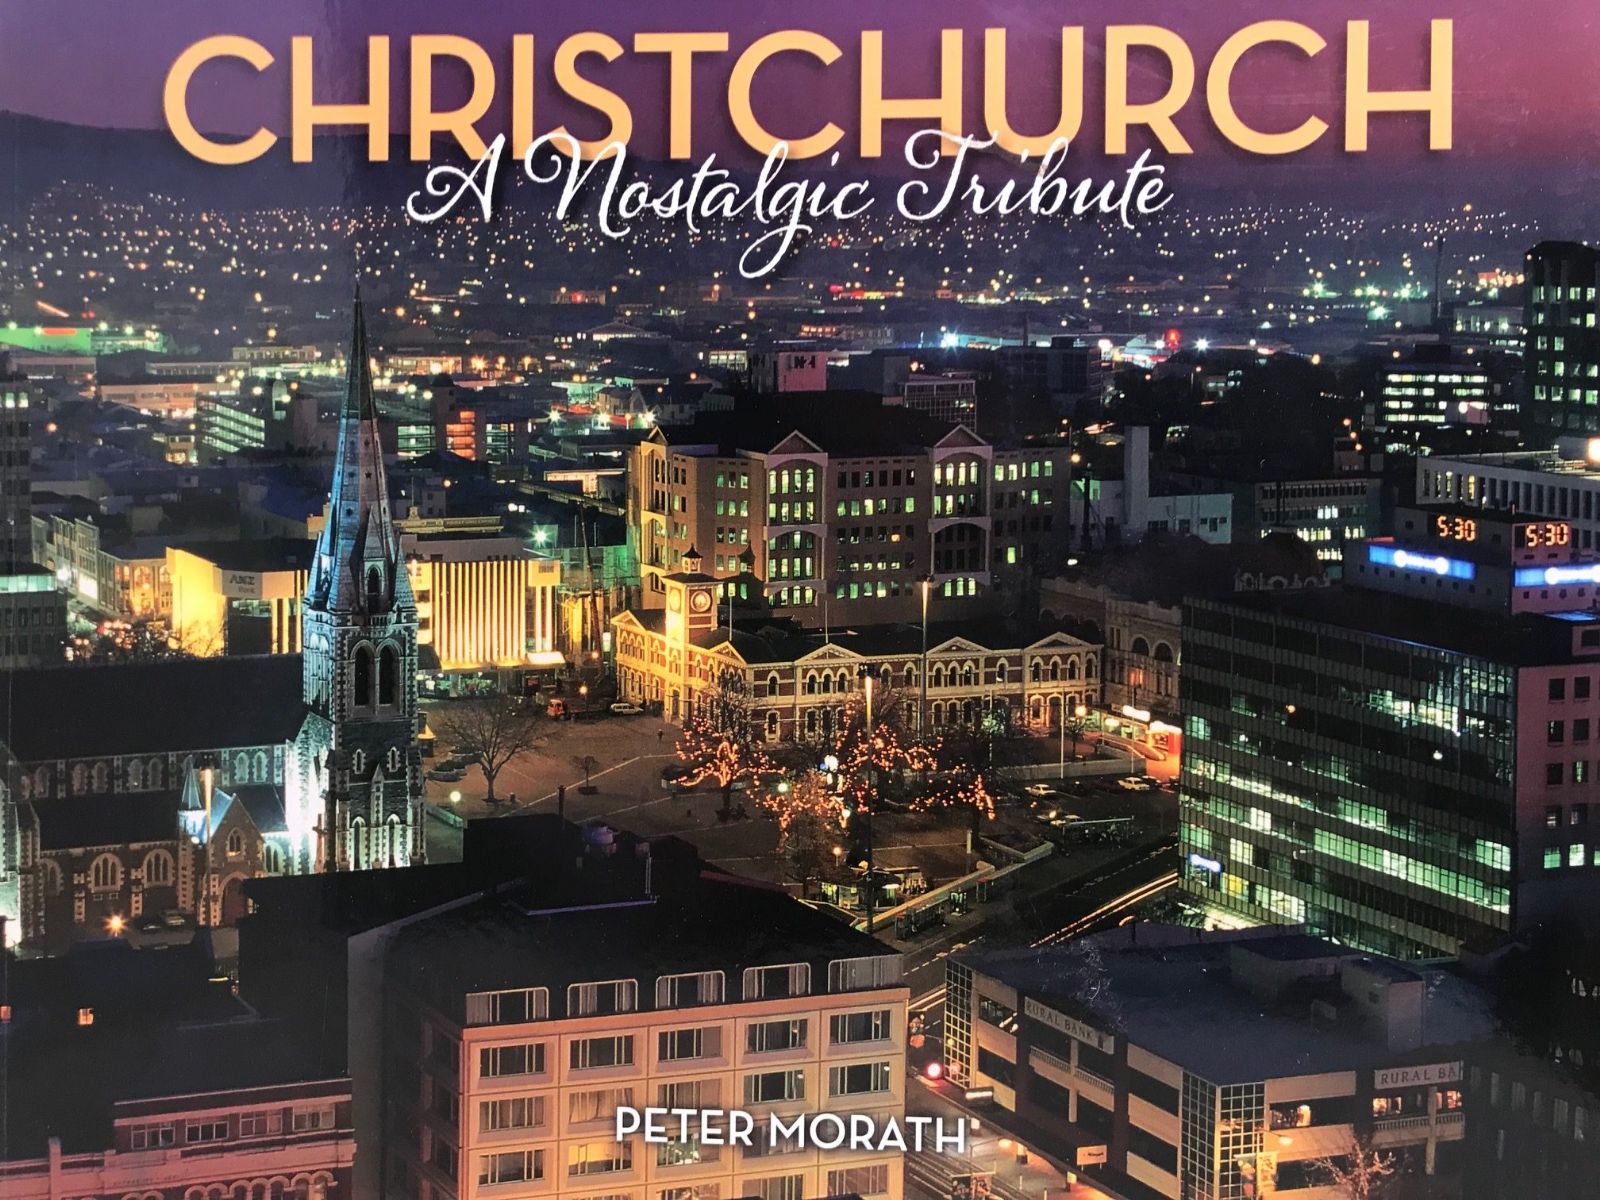 CHRISTCHURCH: A Nostalgic Tribute